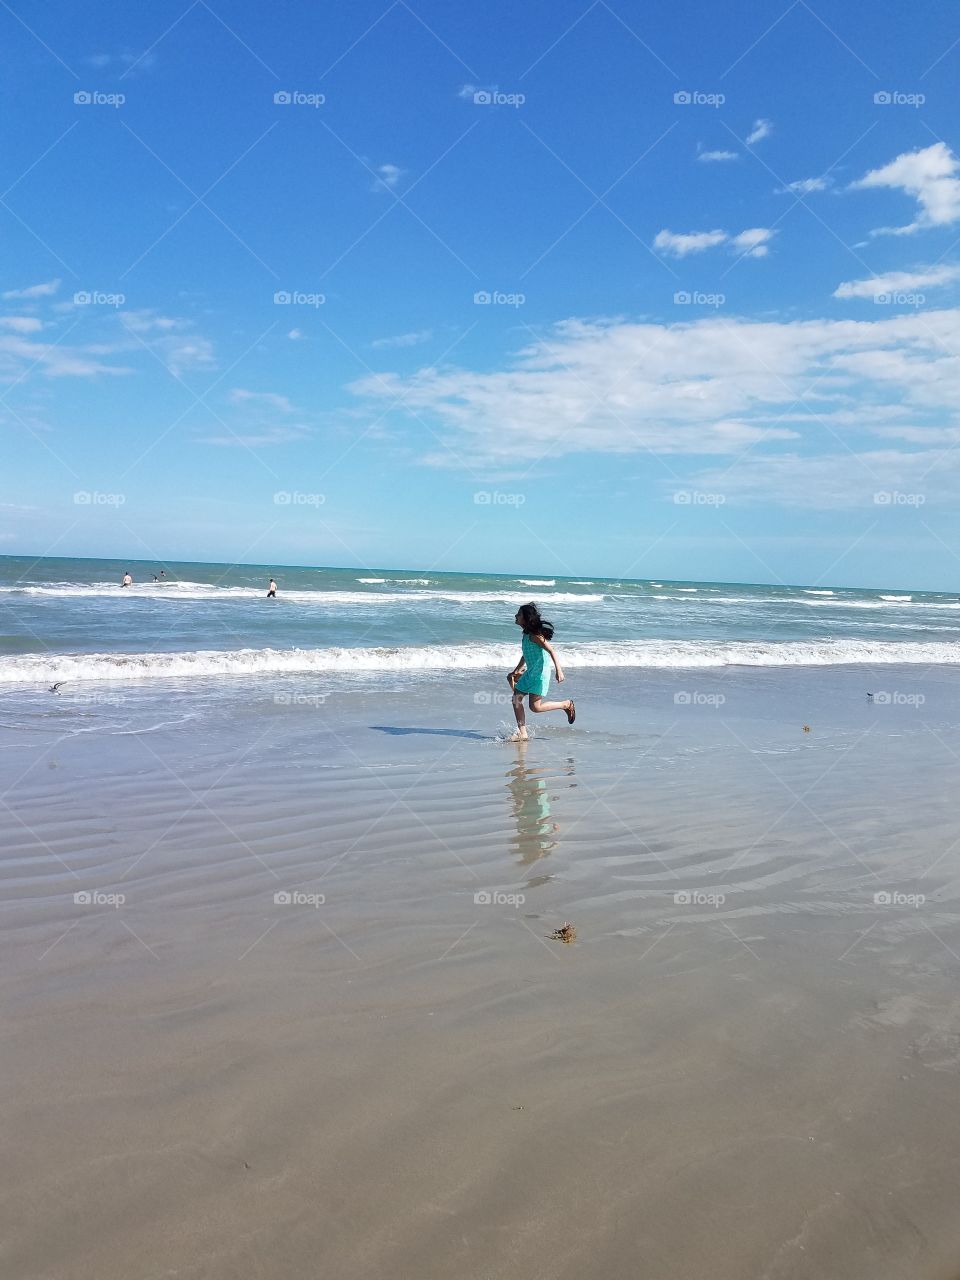 beach kid running